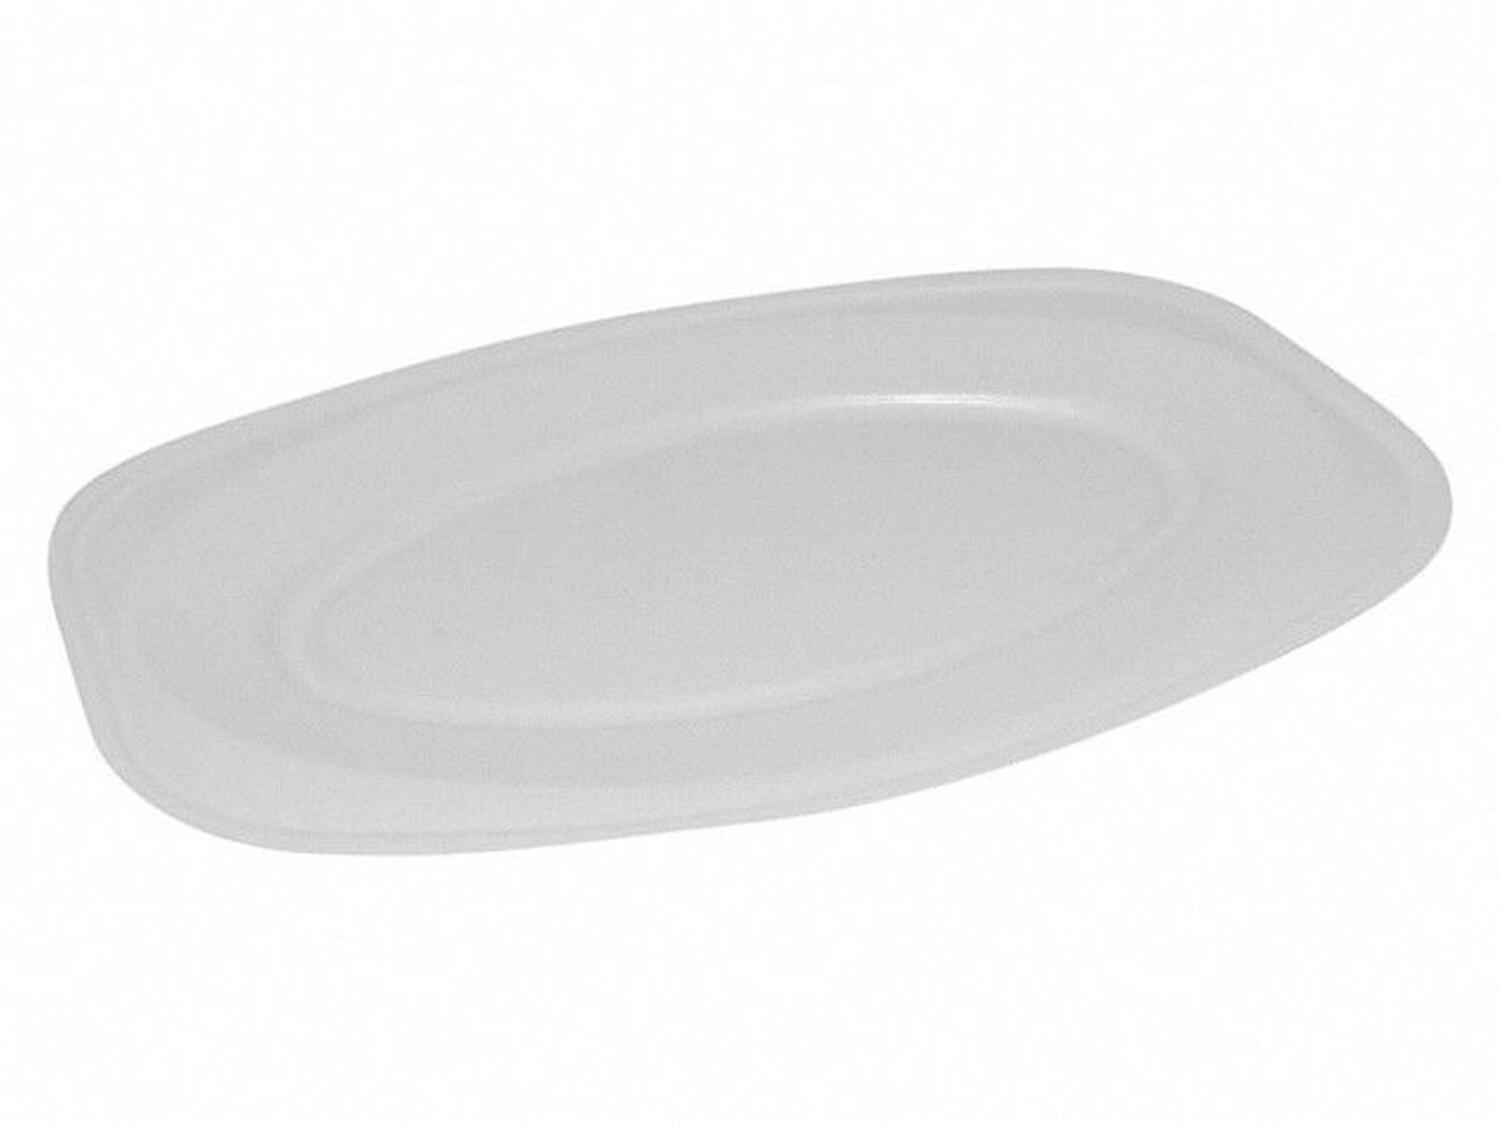 Servierteller, Party-Platte oval weiß  55 x 36 cm, Größe XL,  2 Stk.